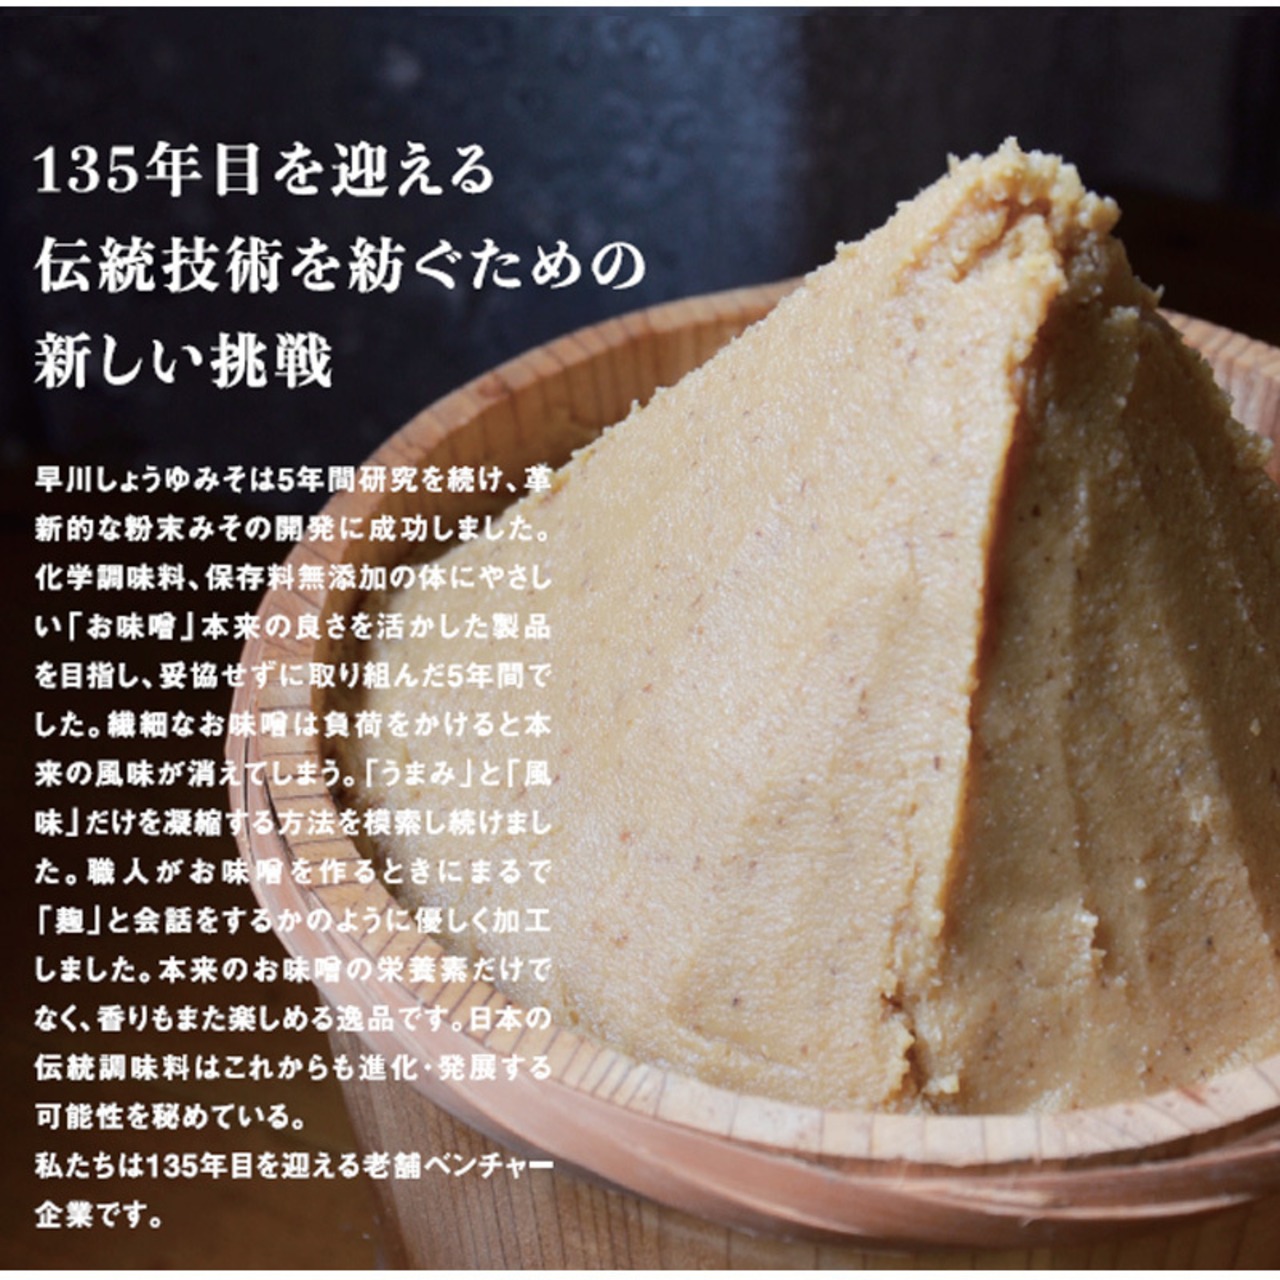 早川しょうゆみそ  早川のみそパウダー umami・so -ごま- 70g 3本セット 乾燥味噌